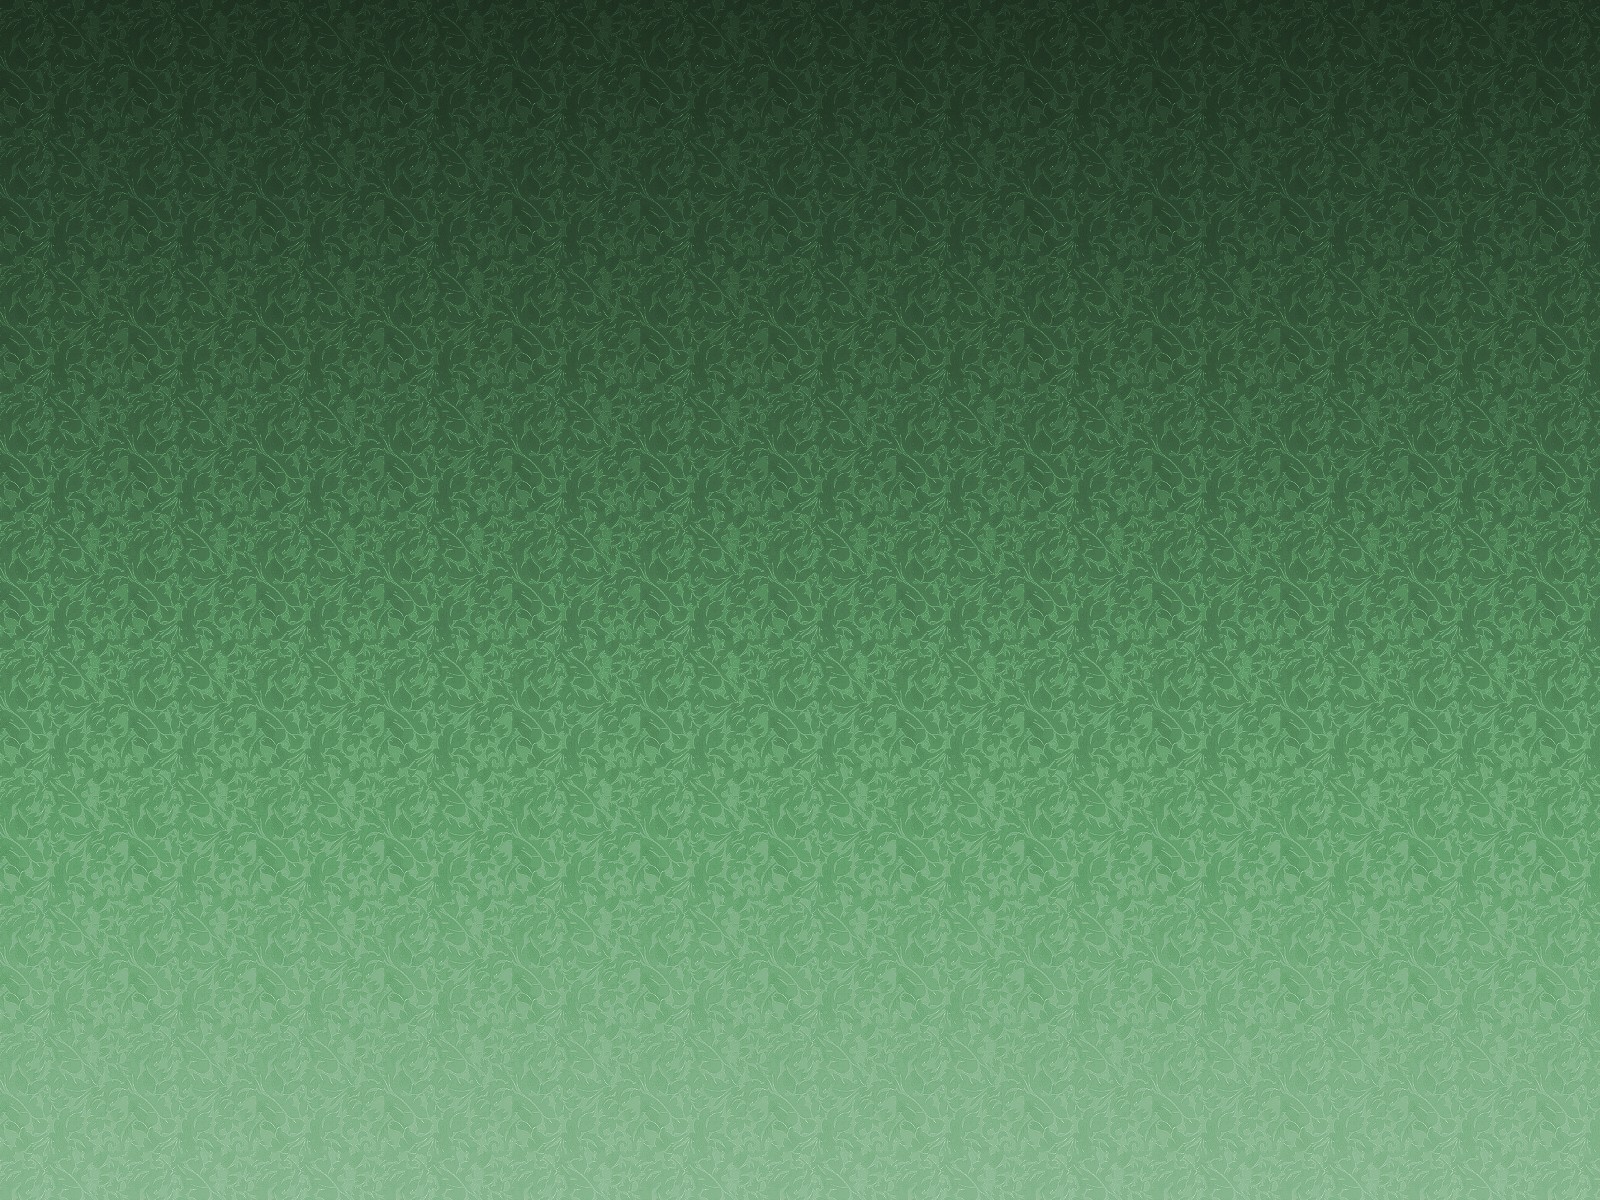 General 1600x1200 minimalism green background textured texture pattern